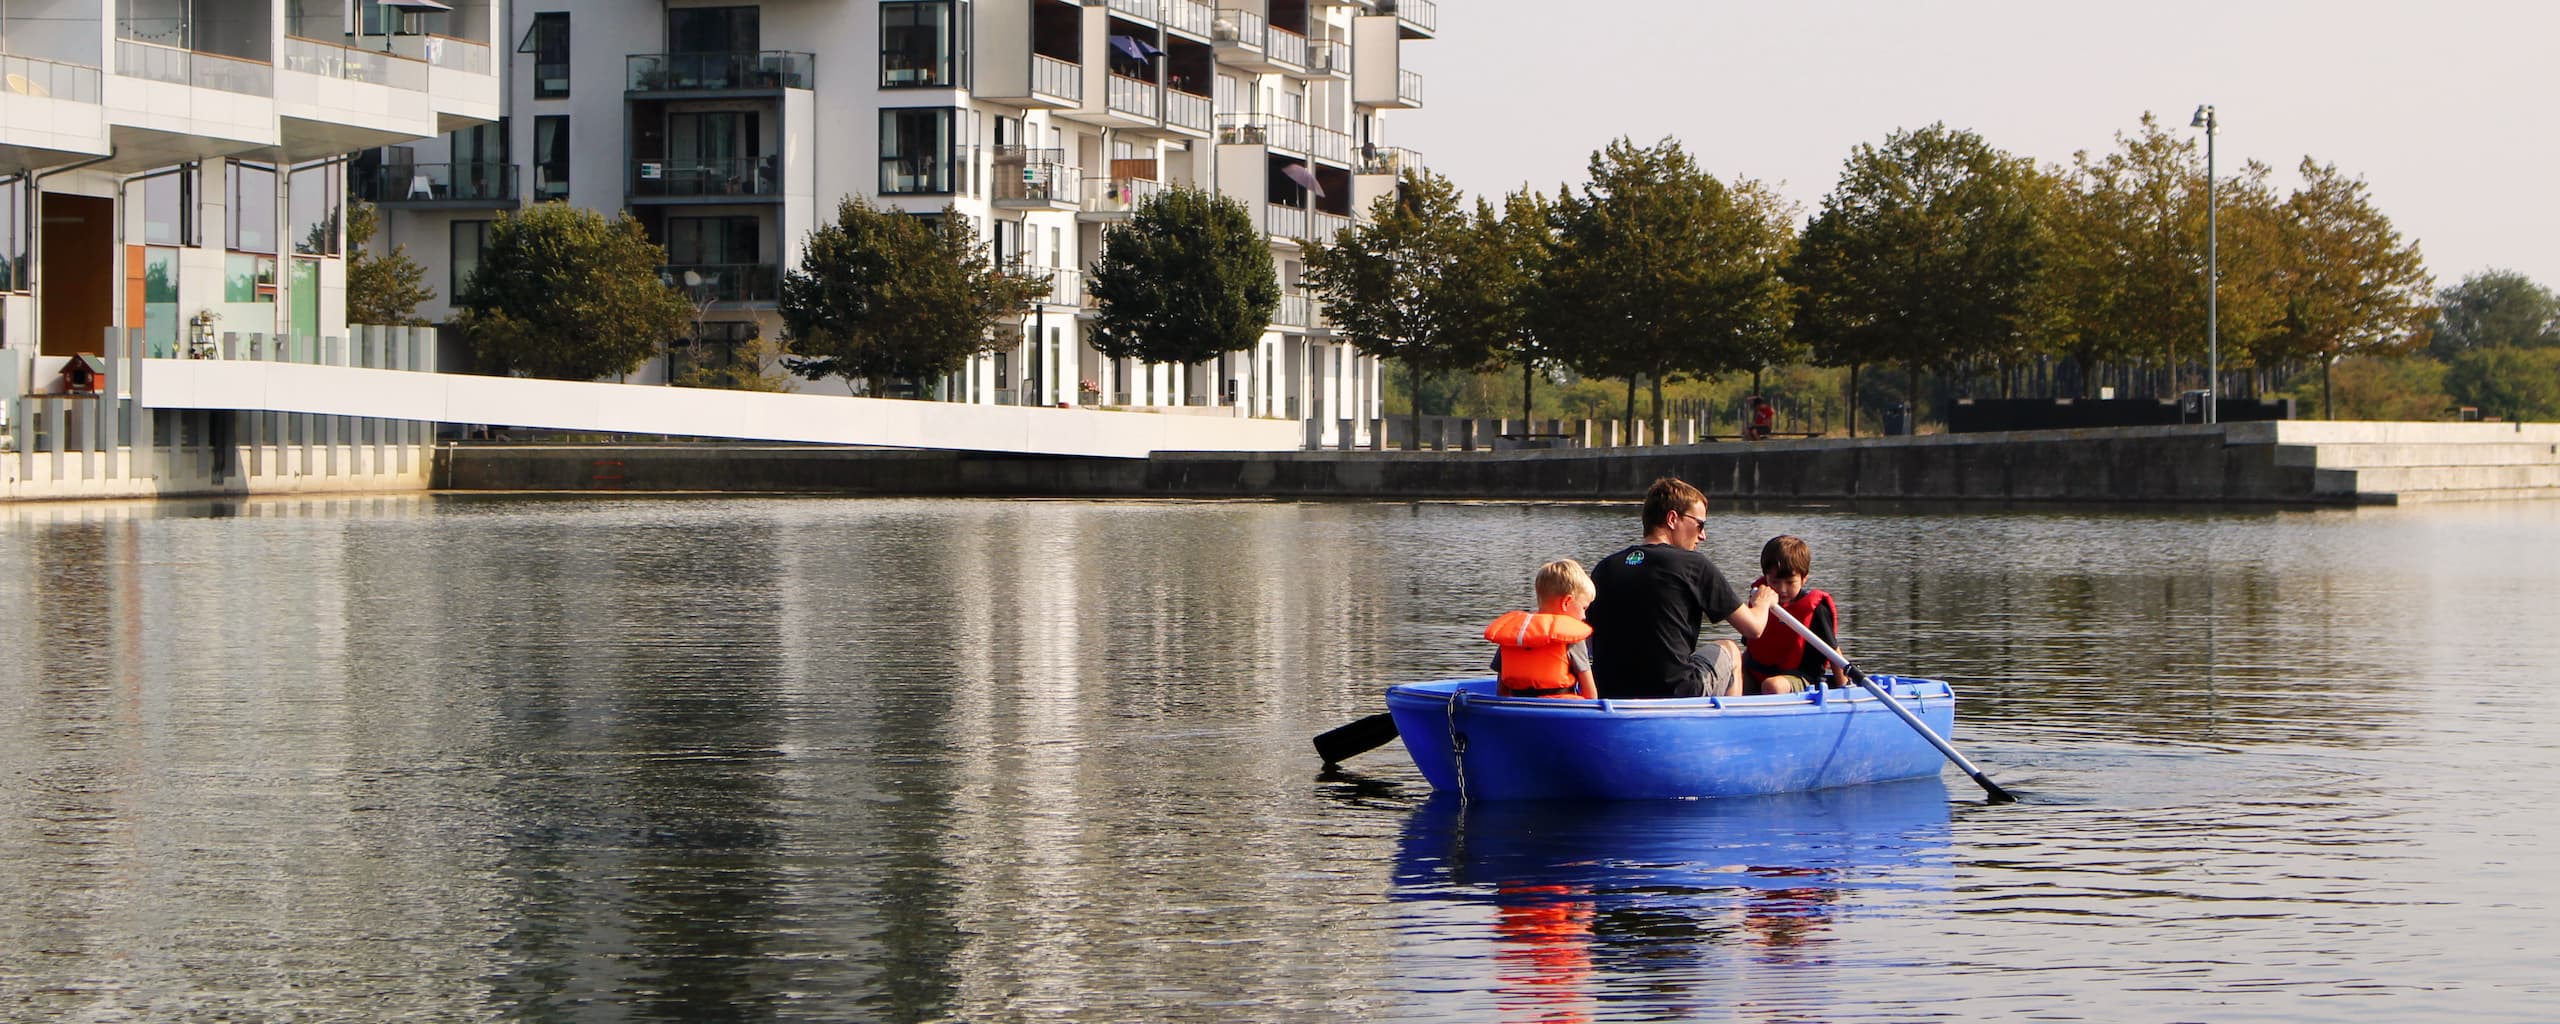 Vandlaugets både og kajakker er populære i Ørestad Syd om sommeren, hvor blandt andet lokale familier bruger dem til at ro en hyggelig tur og nyde deres kvarter til vands.